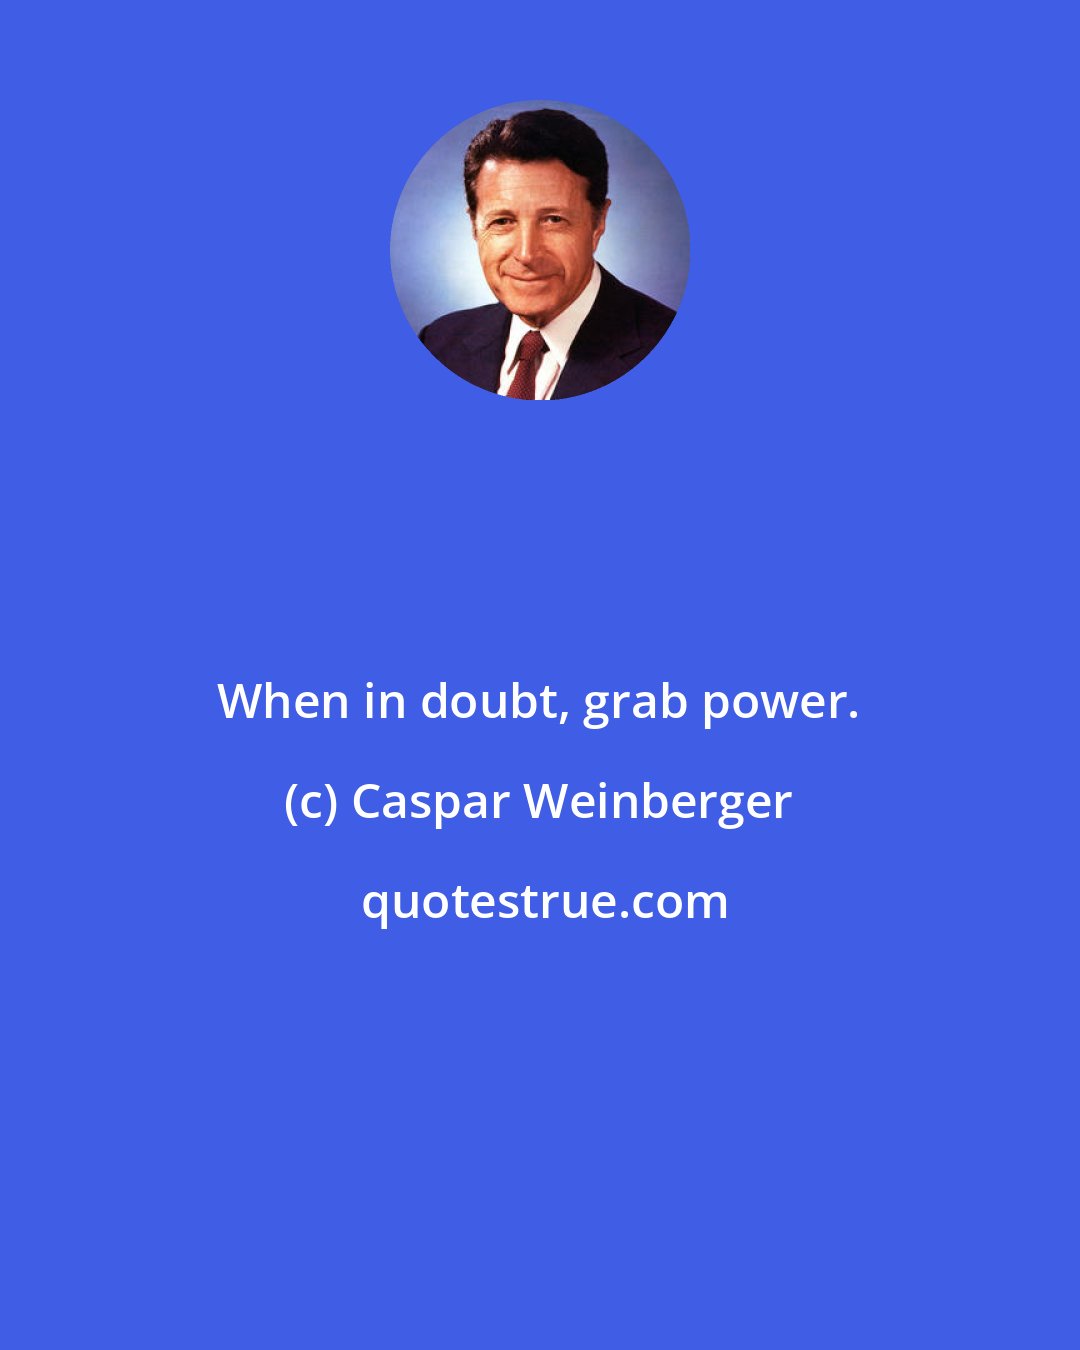 Caspar Weinberger: When in doubt, grab power.